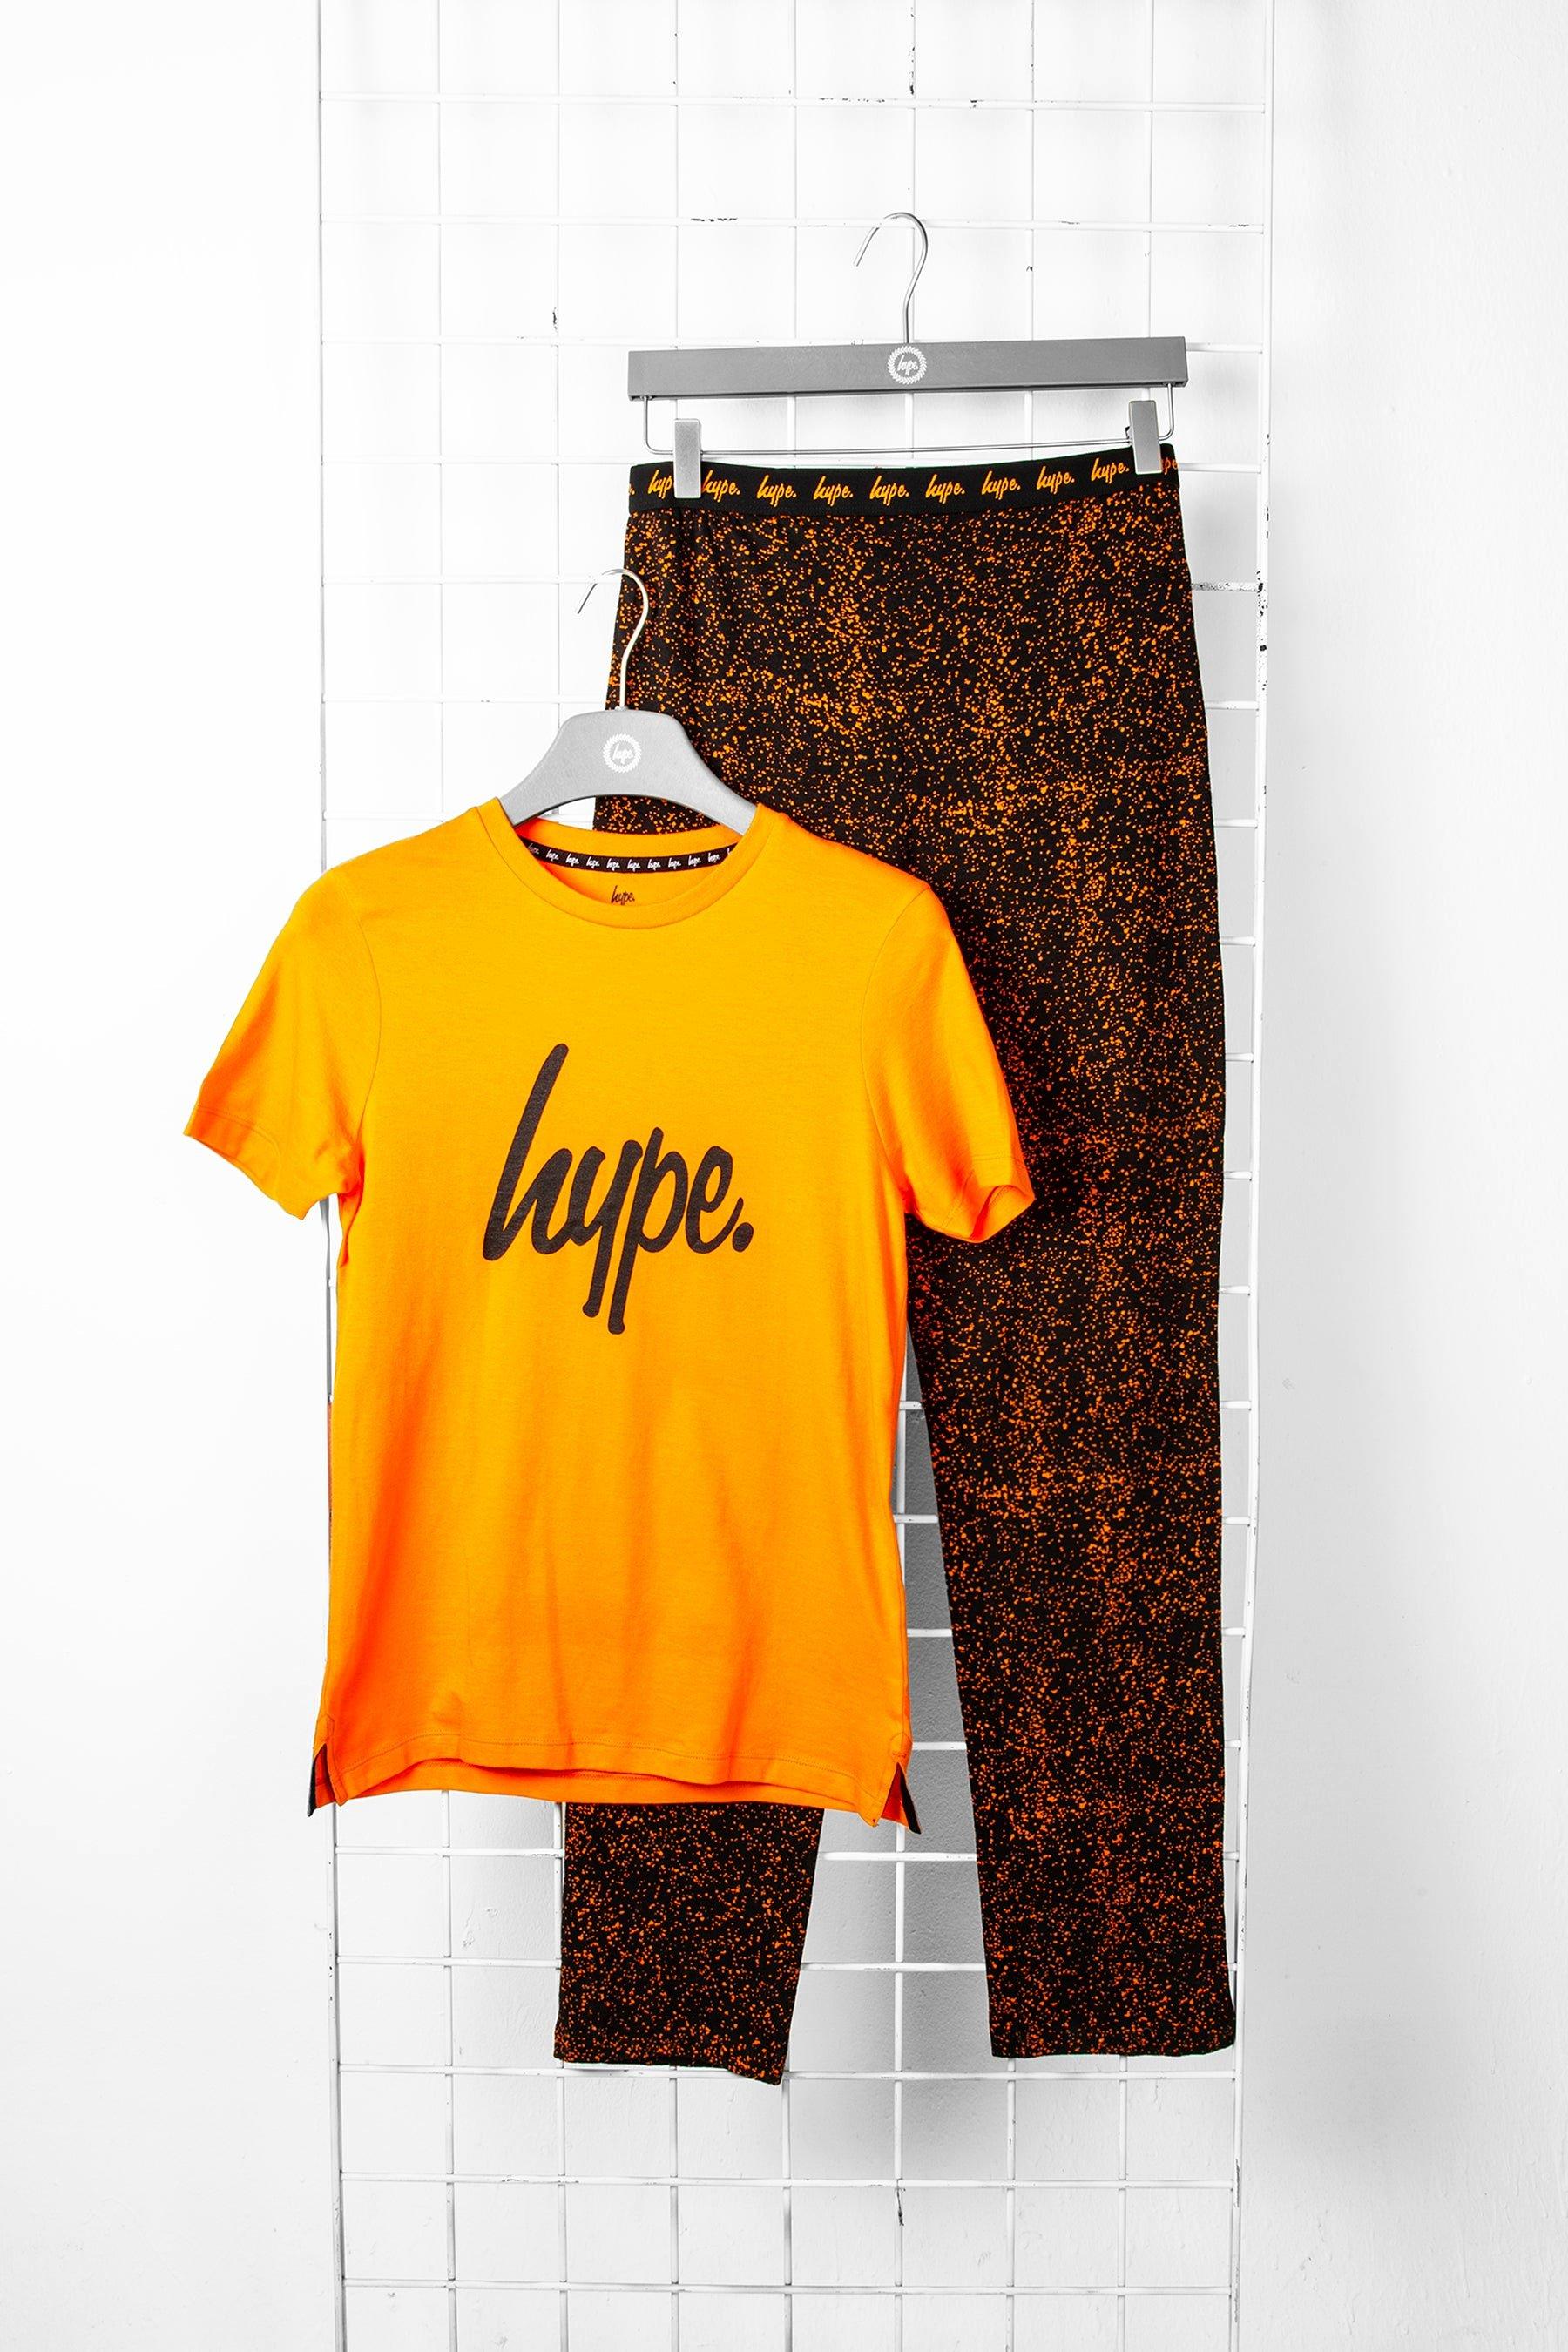 1 комплект футболок и пижамы Hype, черный